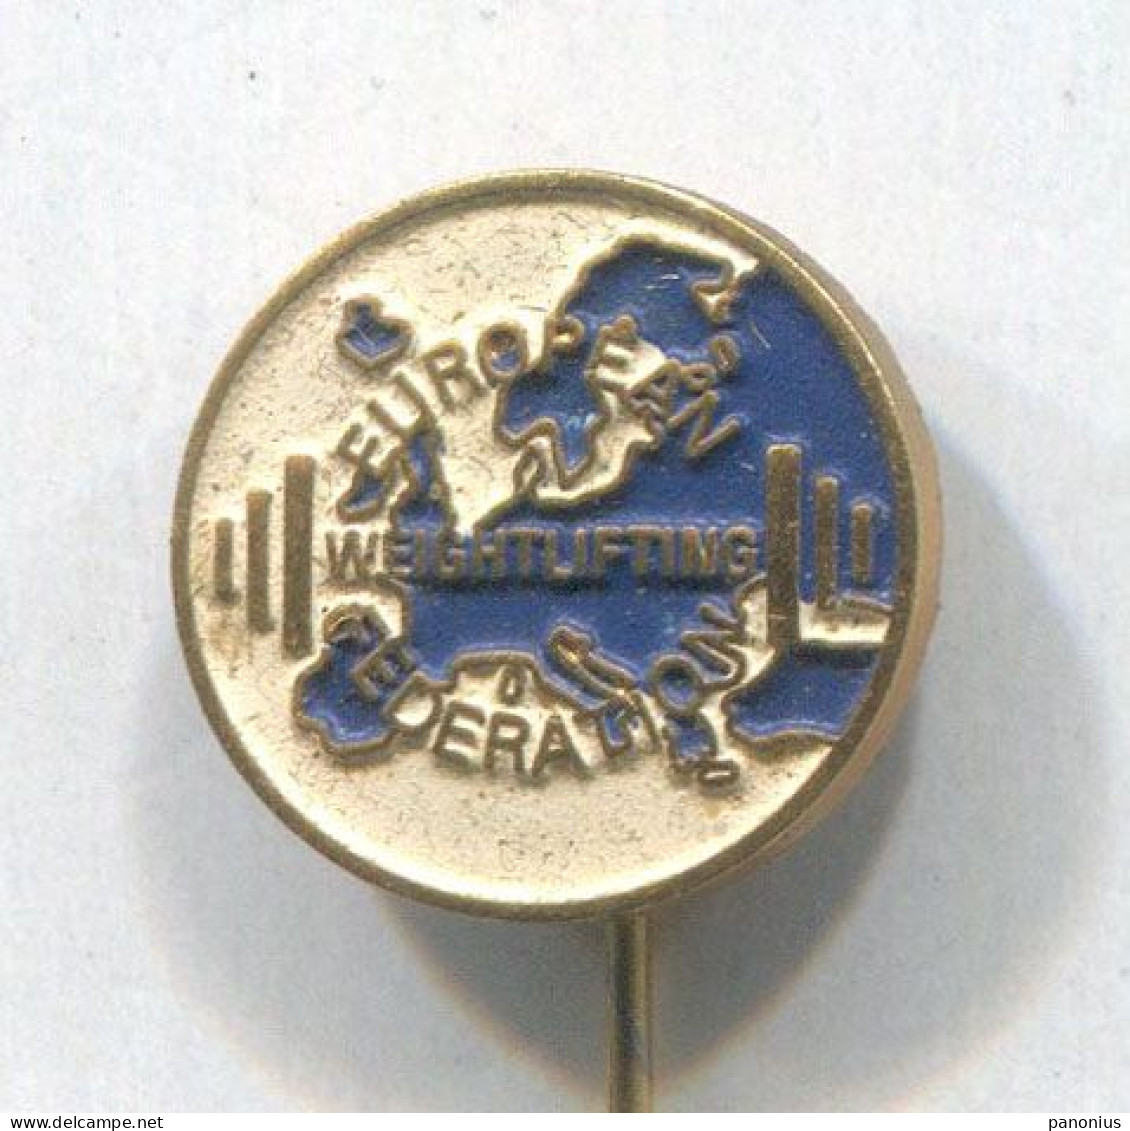 Weightlifting Gewichtheben - European Federation Association, Vintage Pin, Badge, Abzeichen - Gewichtheffen